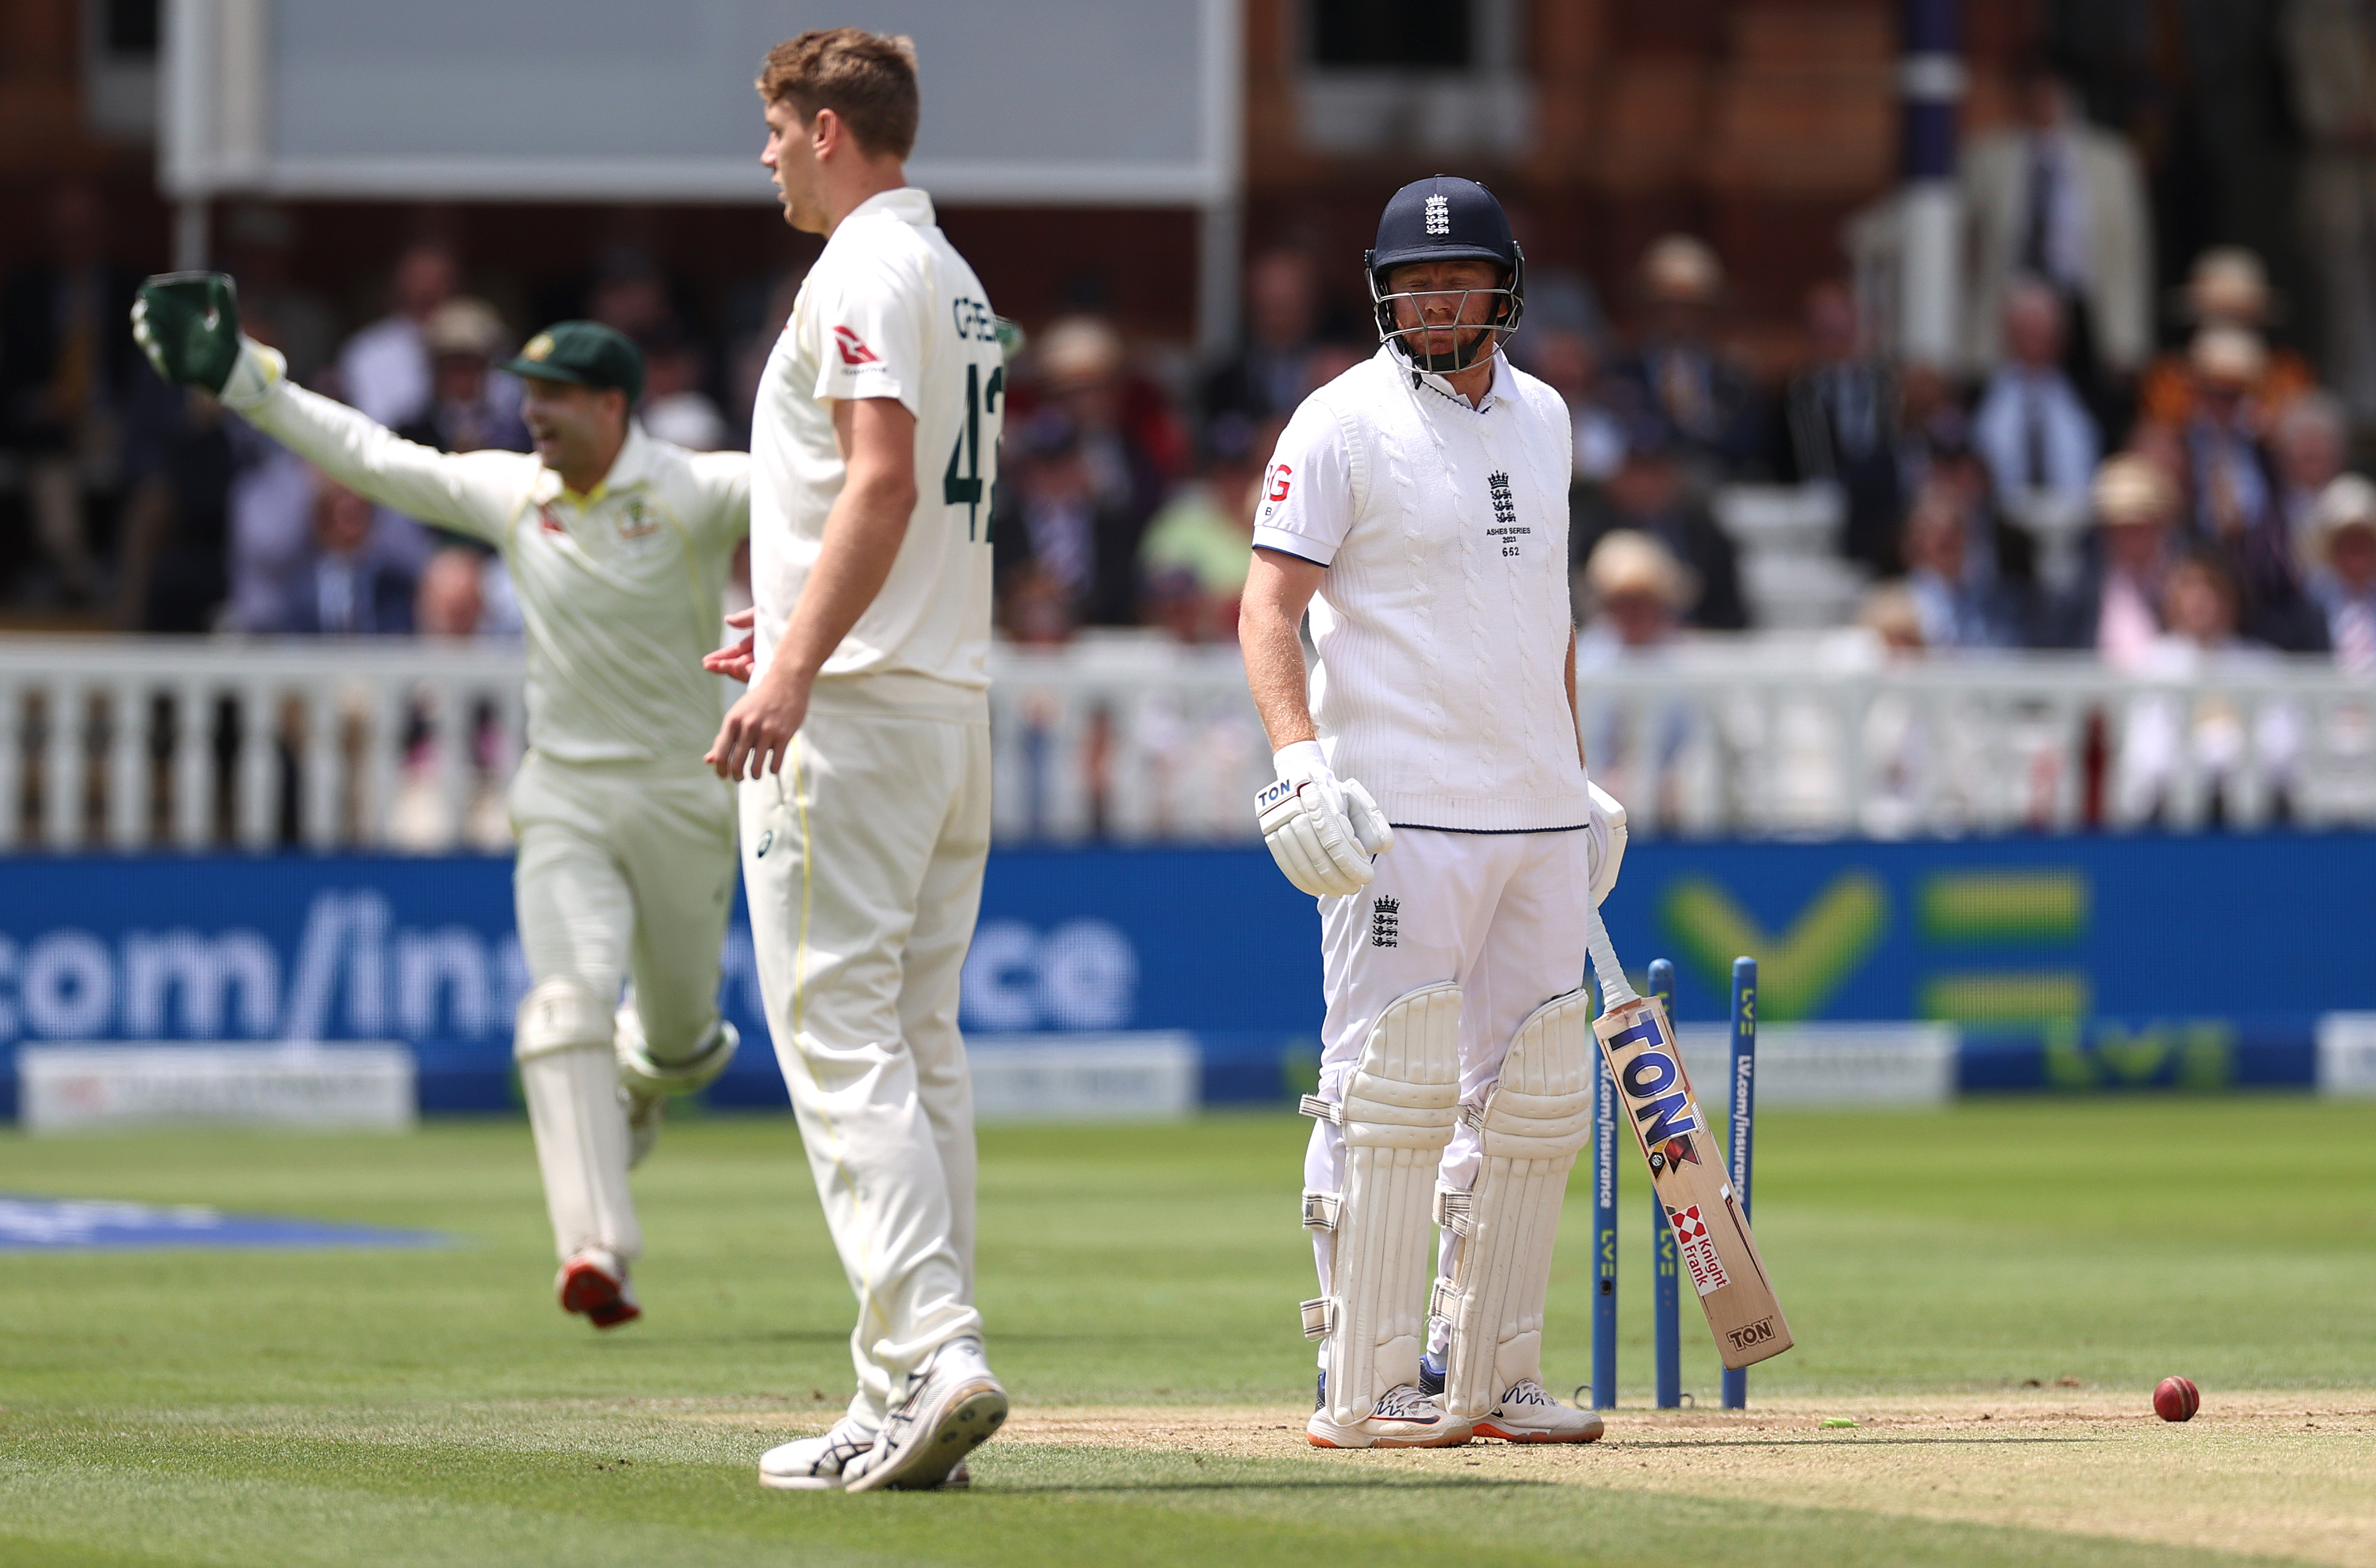 Der umstrittene Schlag des australischen Wicket-Keepers Alex Carey gegen den Engländer Jonny Bairstow löste gestern bei Lord's Chaos aus